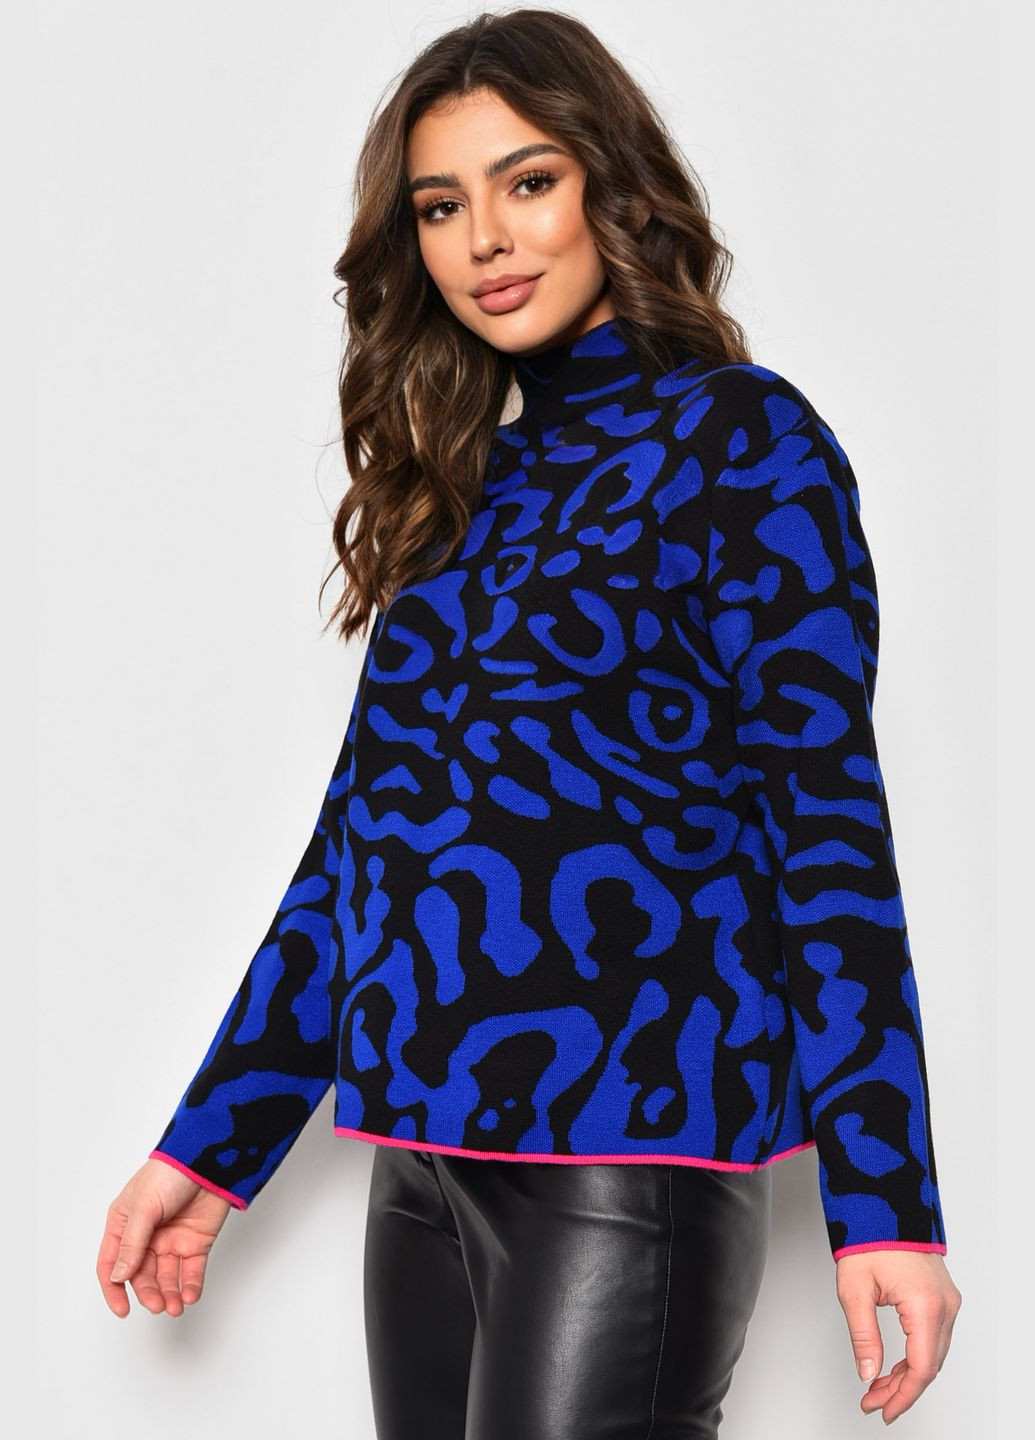 Черный зимний свитер женский с принтом черно-синегоцвета пуловер Let's Shop